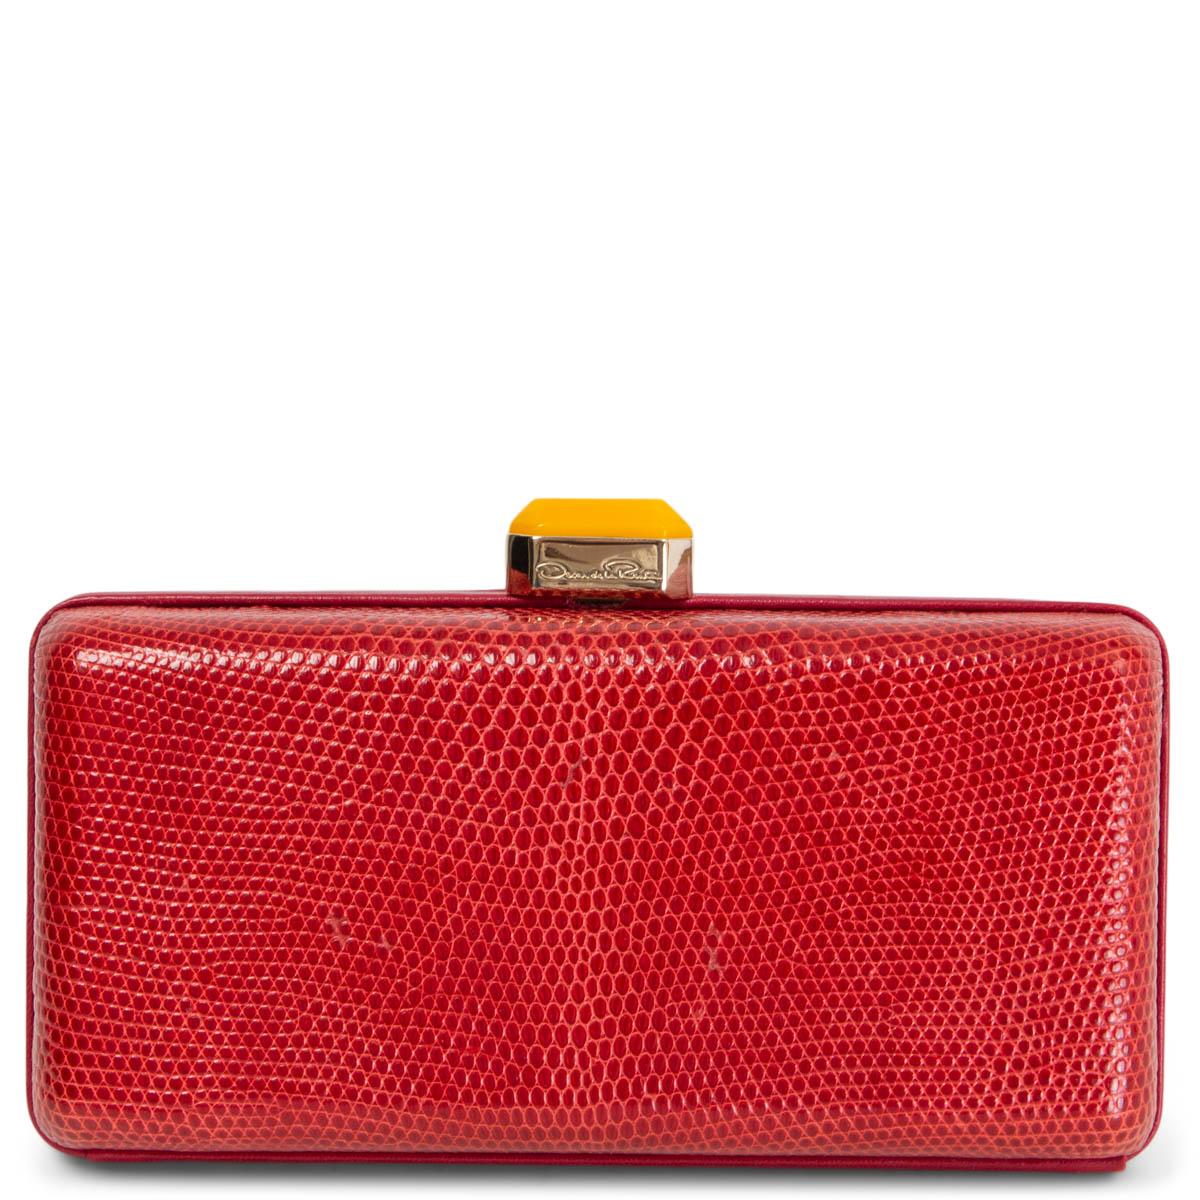 red box clutch bag